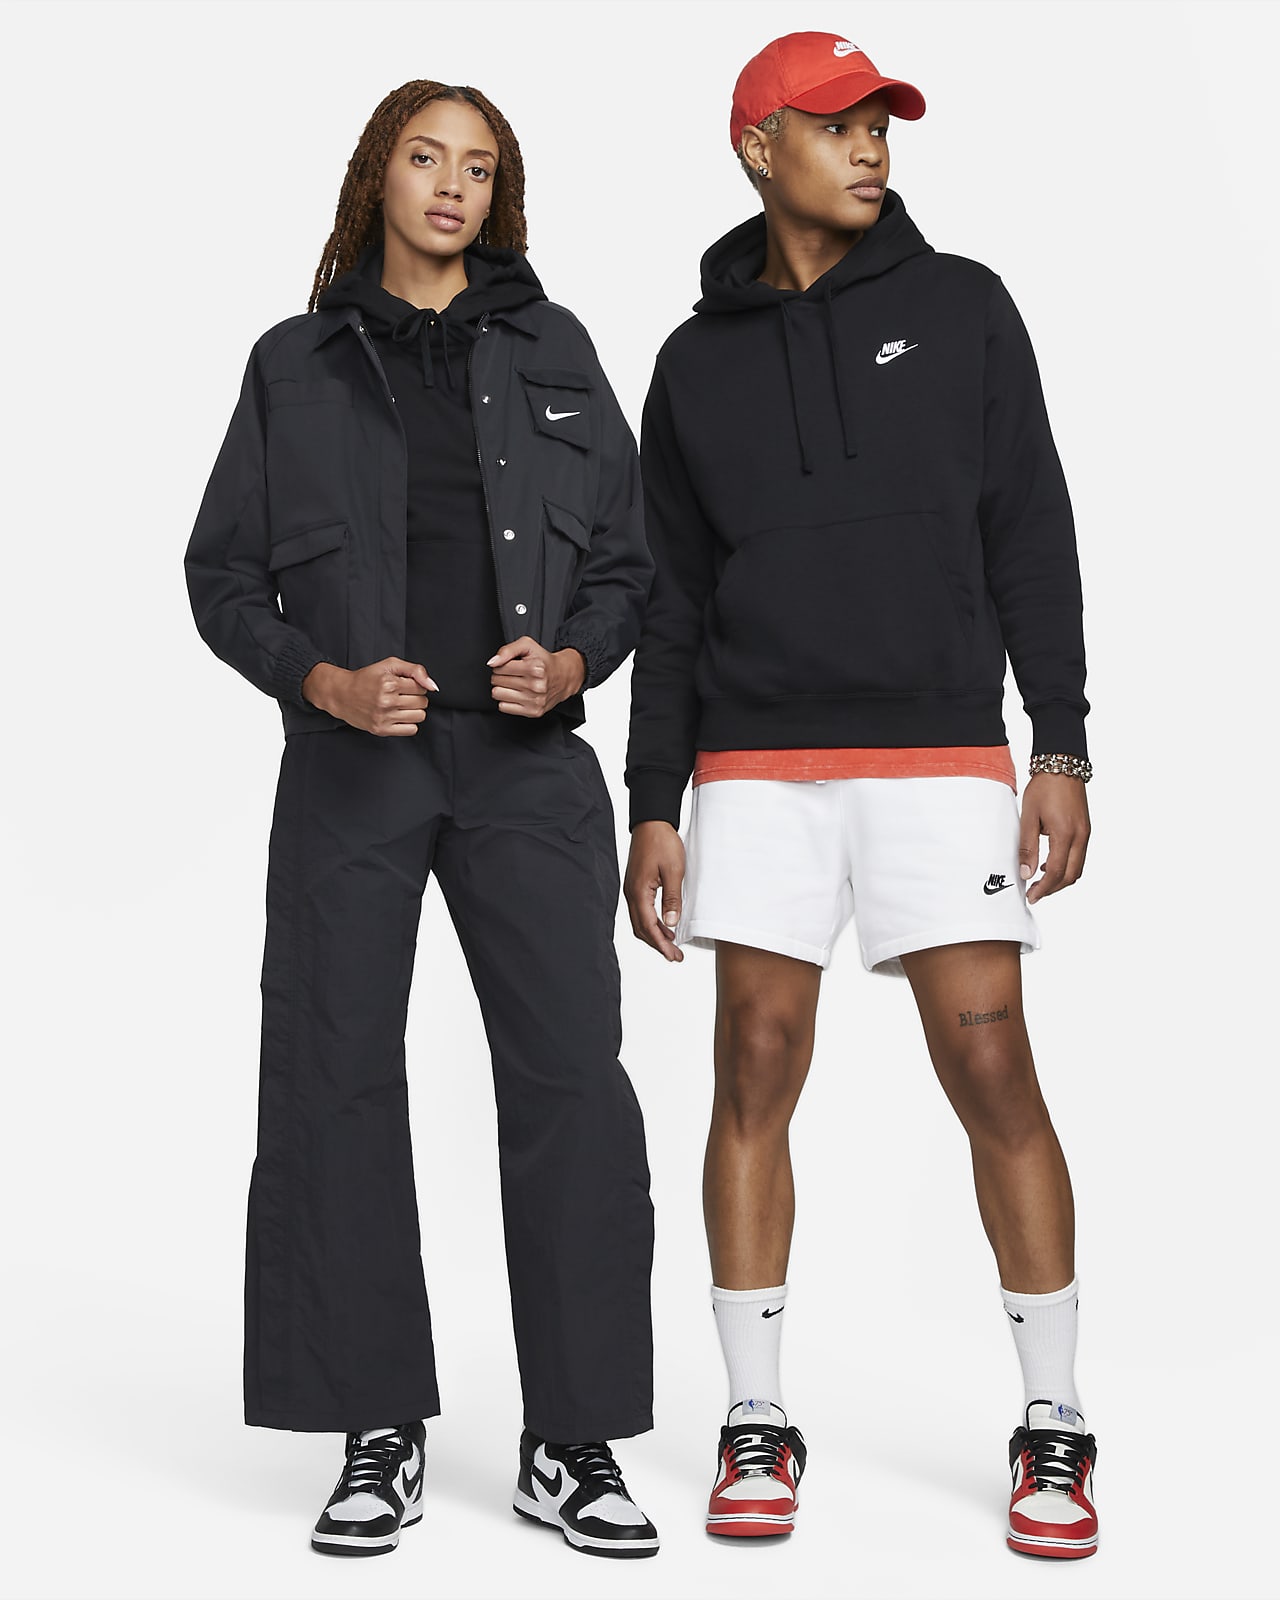 Sweat Nike Sportswear Club Fleece pour Homme - BV2662-259 - Marron